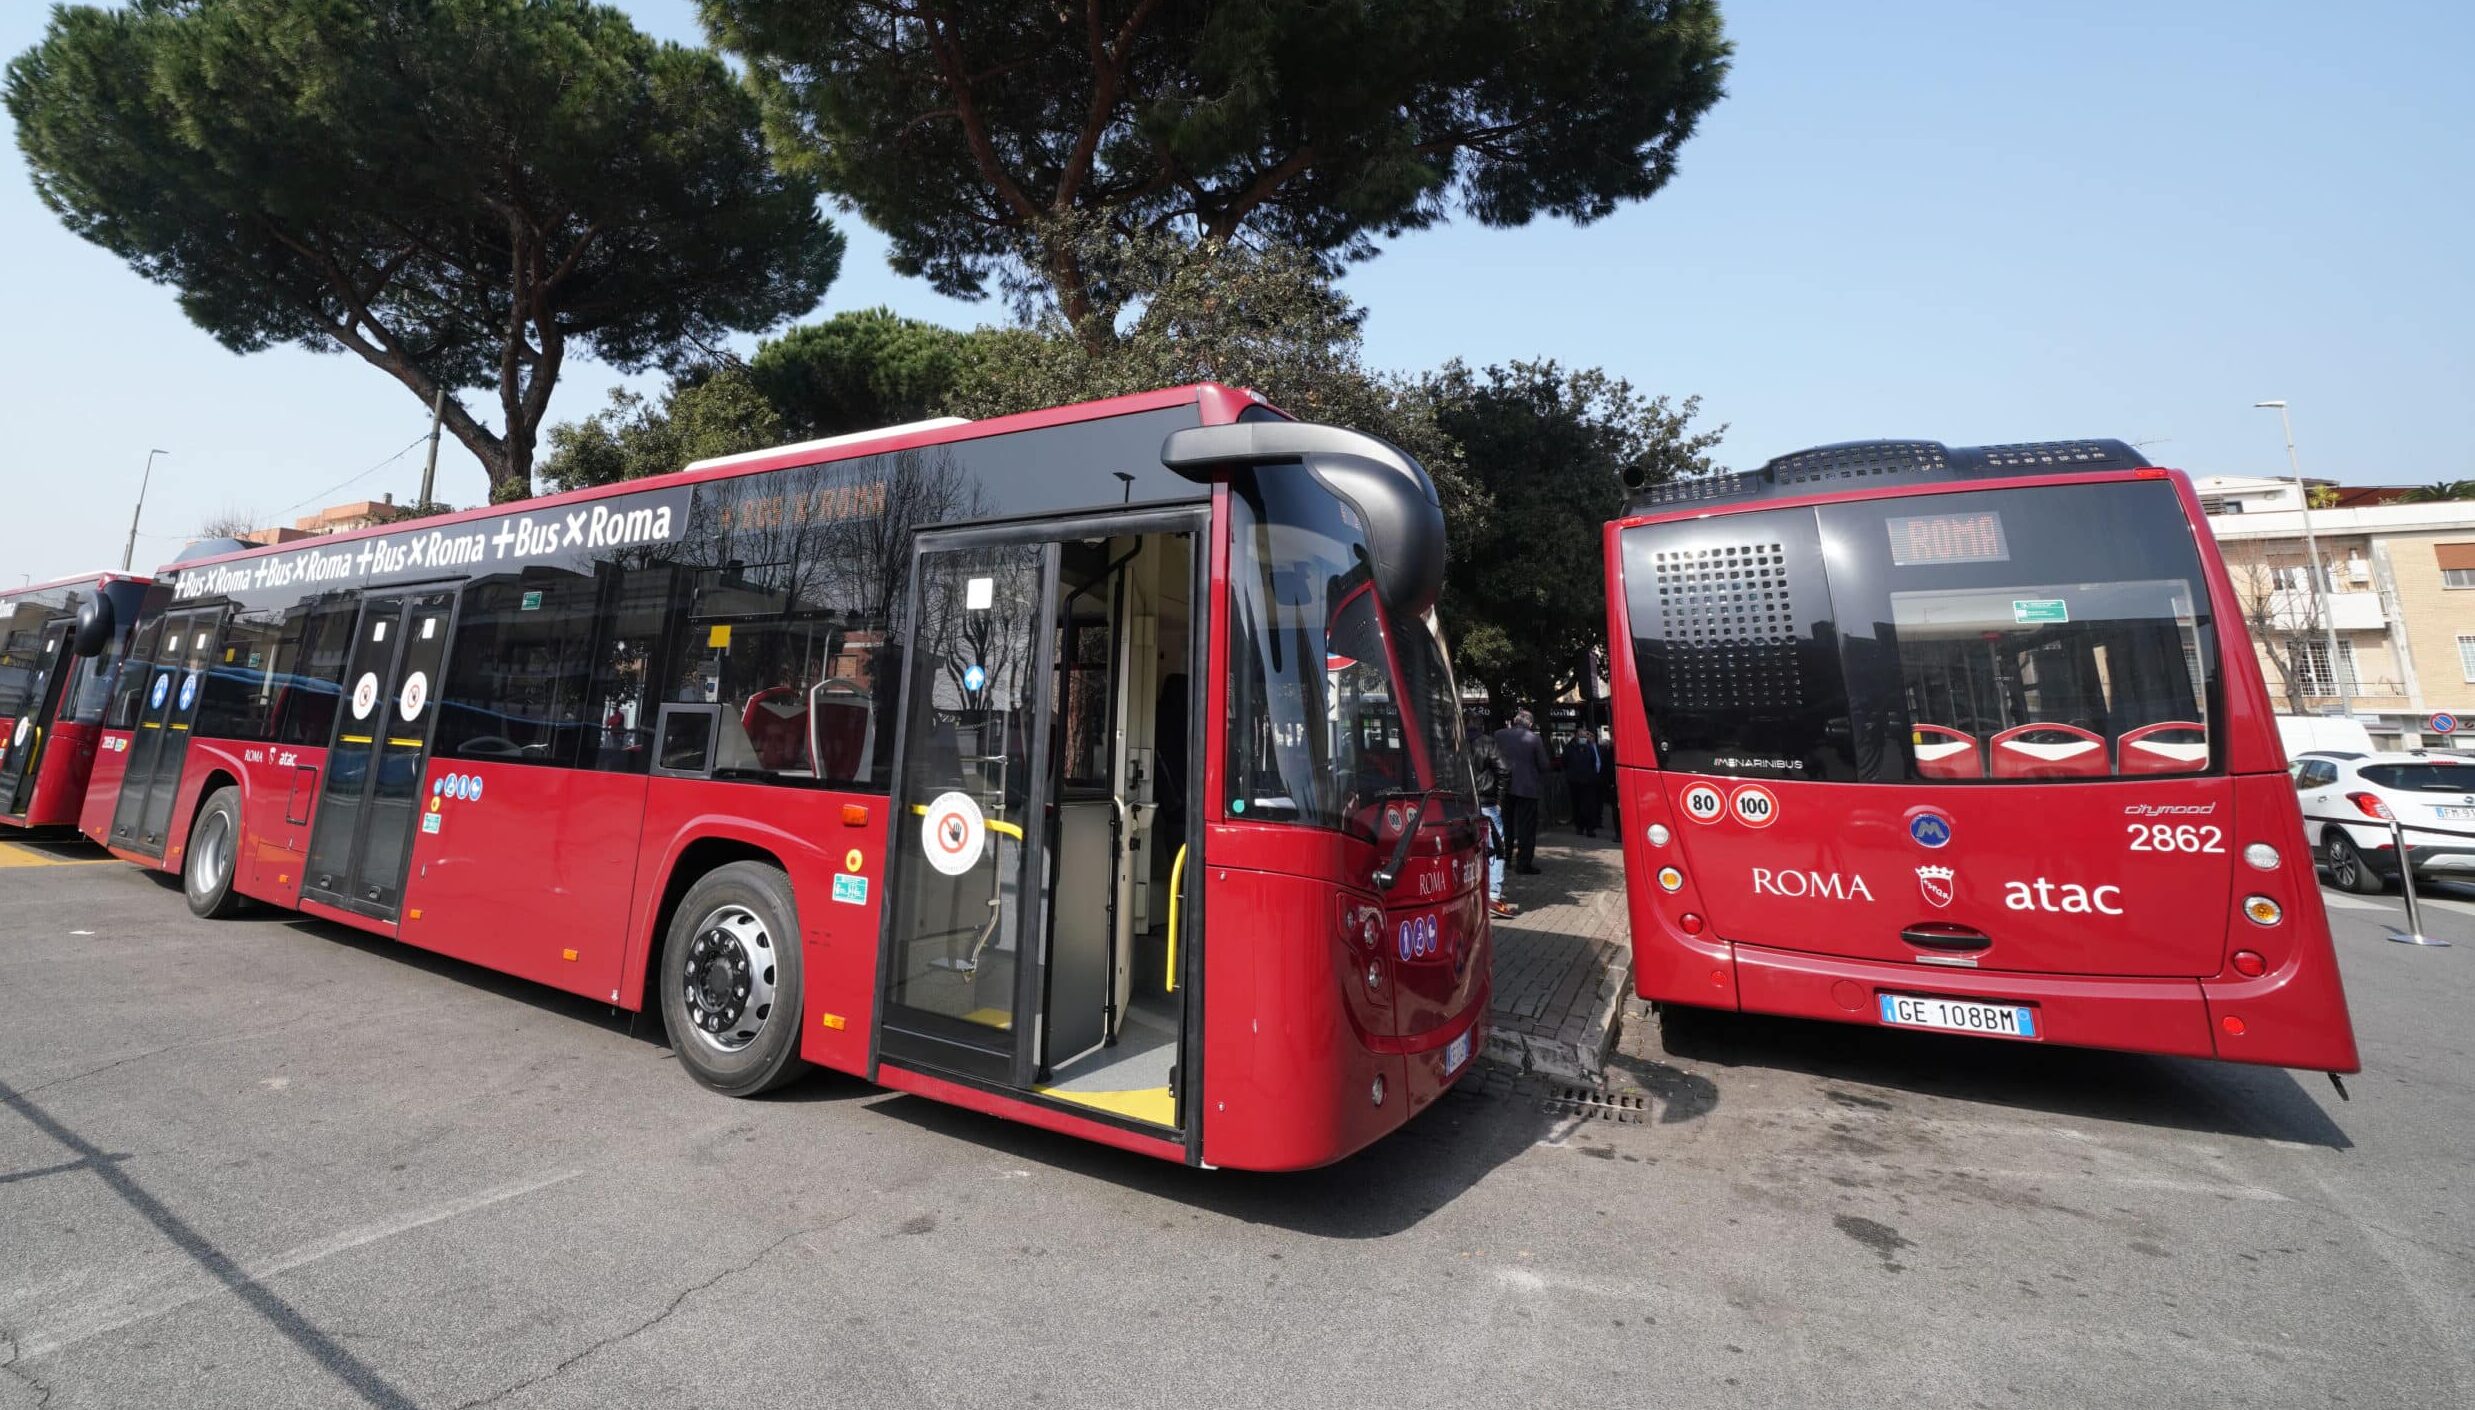 Stretta sui furbetti dei bus. A Roma record di multe a chi viaggia senza biglietto